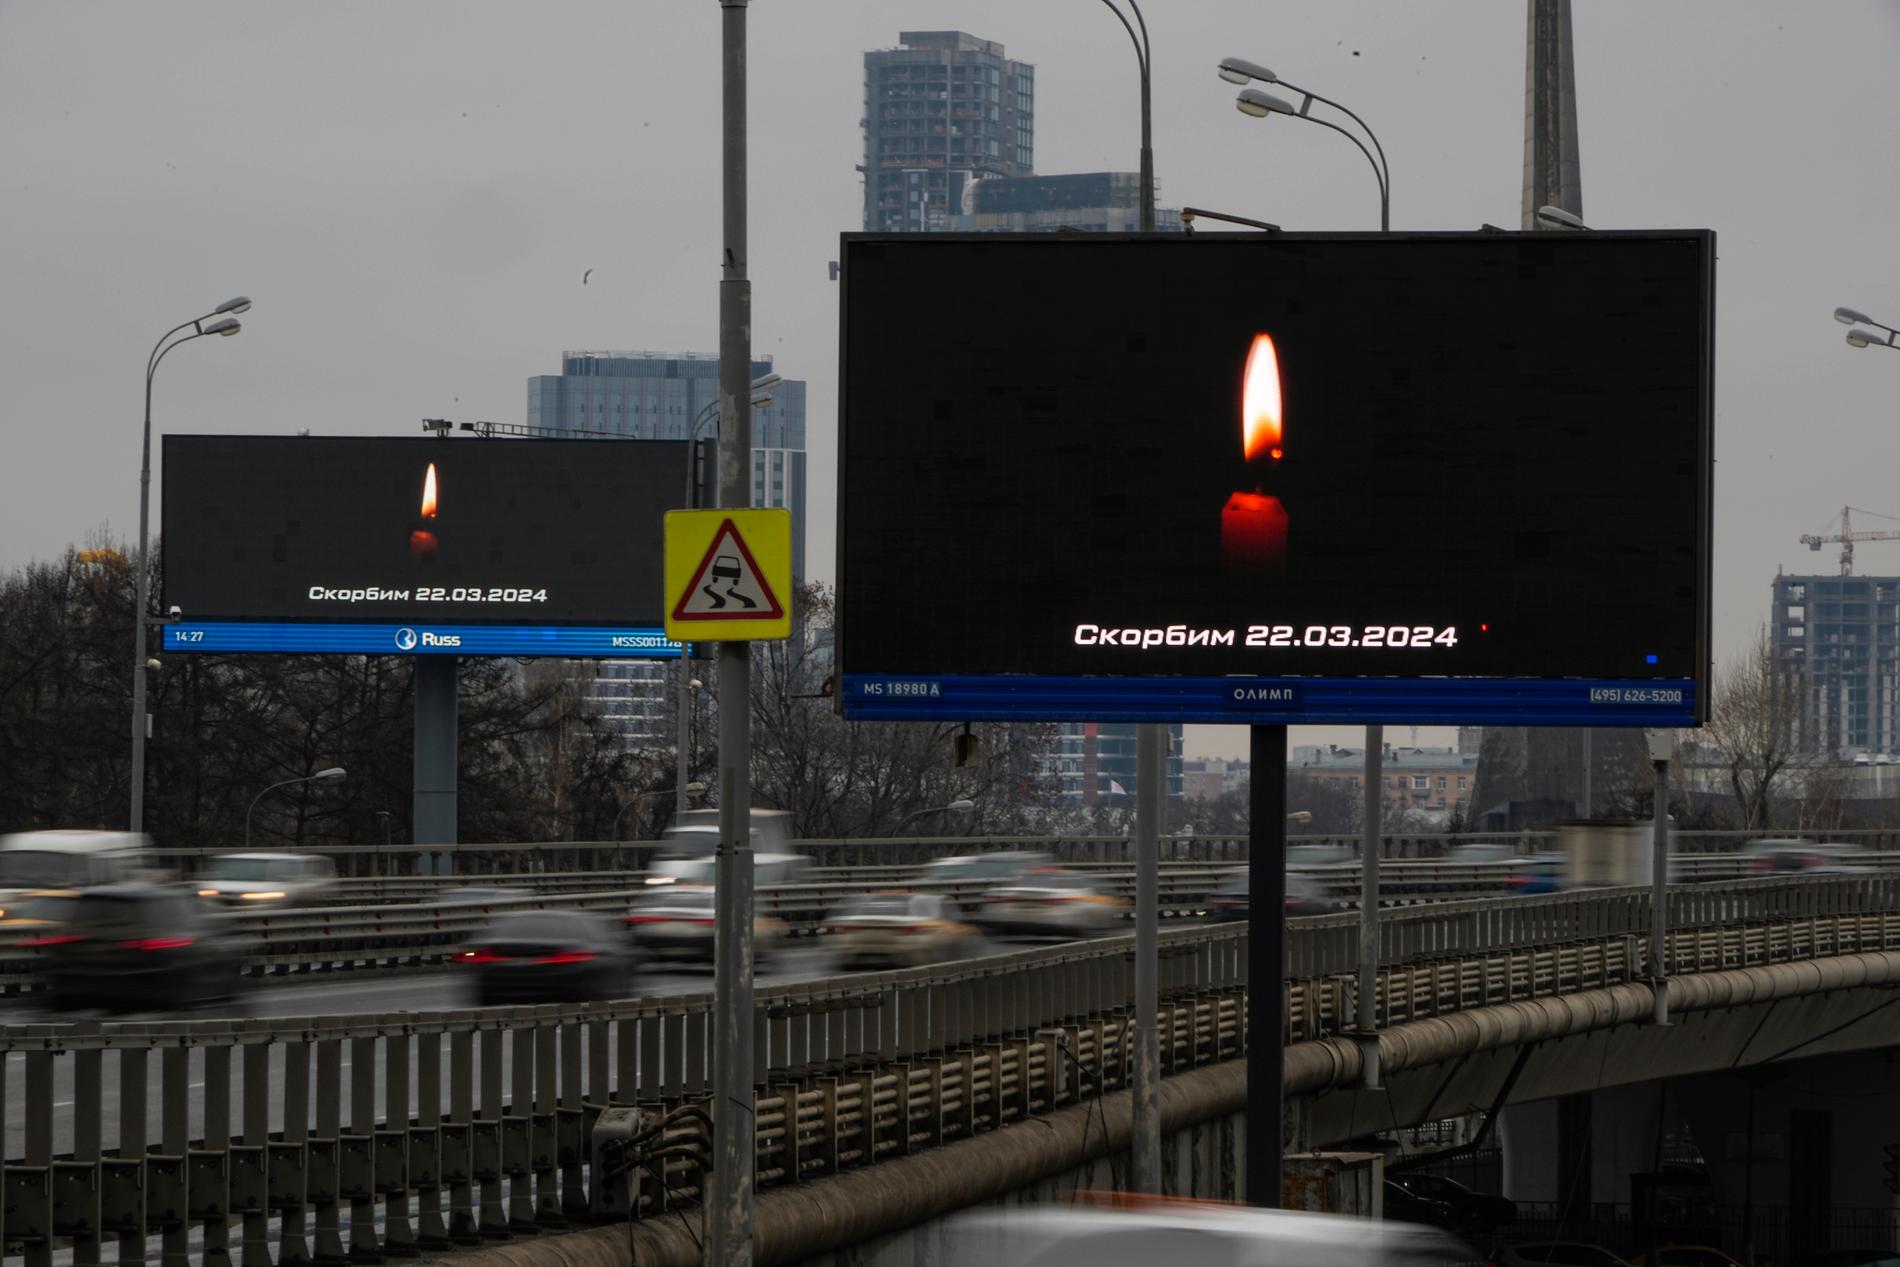 Fler än 130 människor dödades i terrorattacken mot ett konserthus i Moskva i fredags kväll. Här täcks reklamtavlor i den ryska huvudstaden med budskap av sorg.